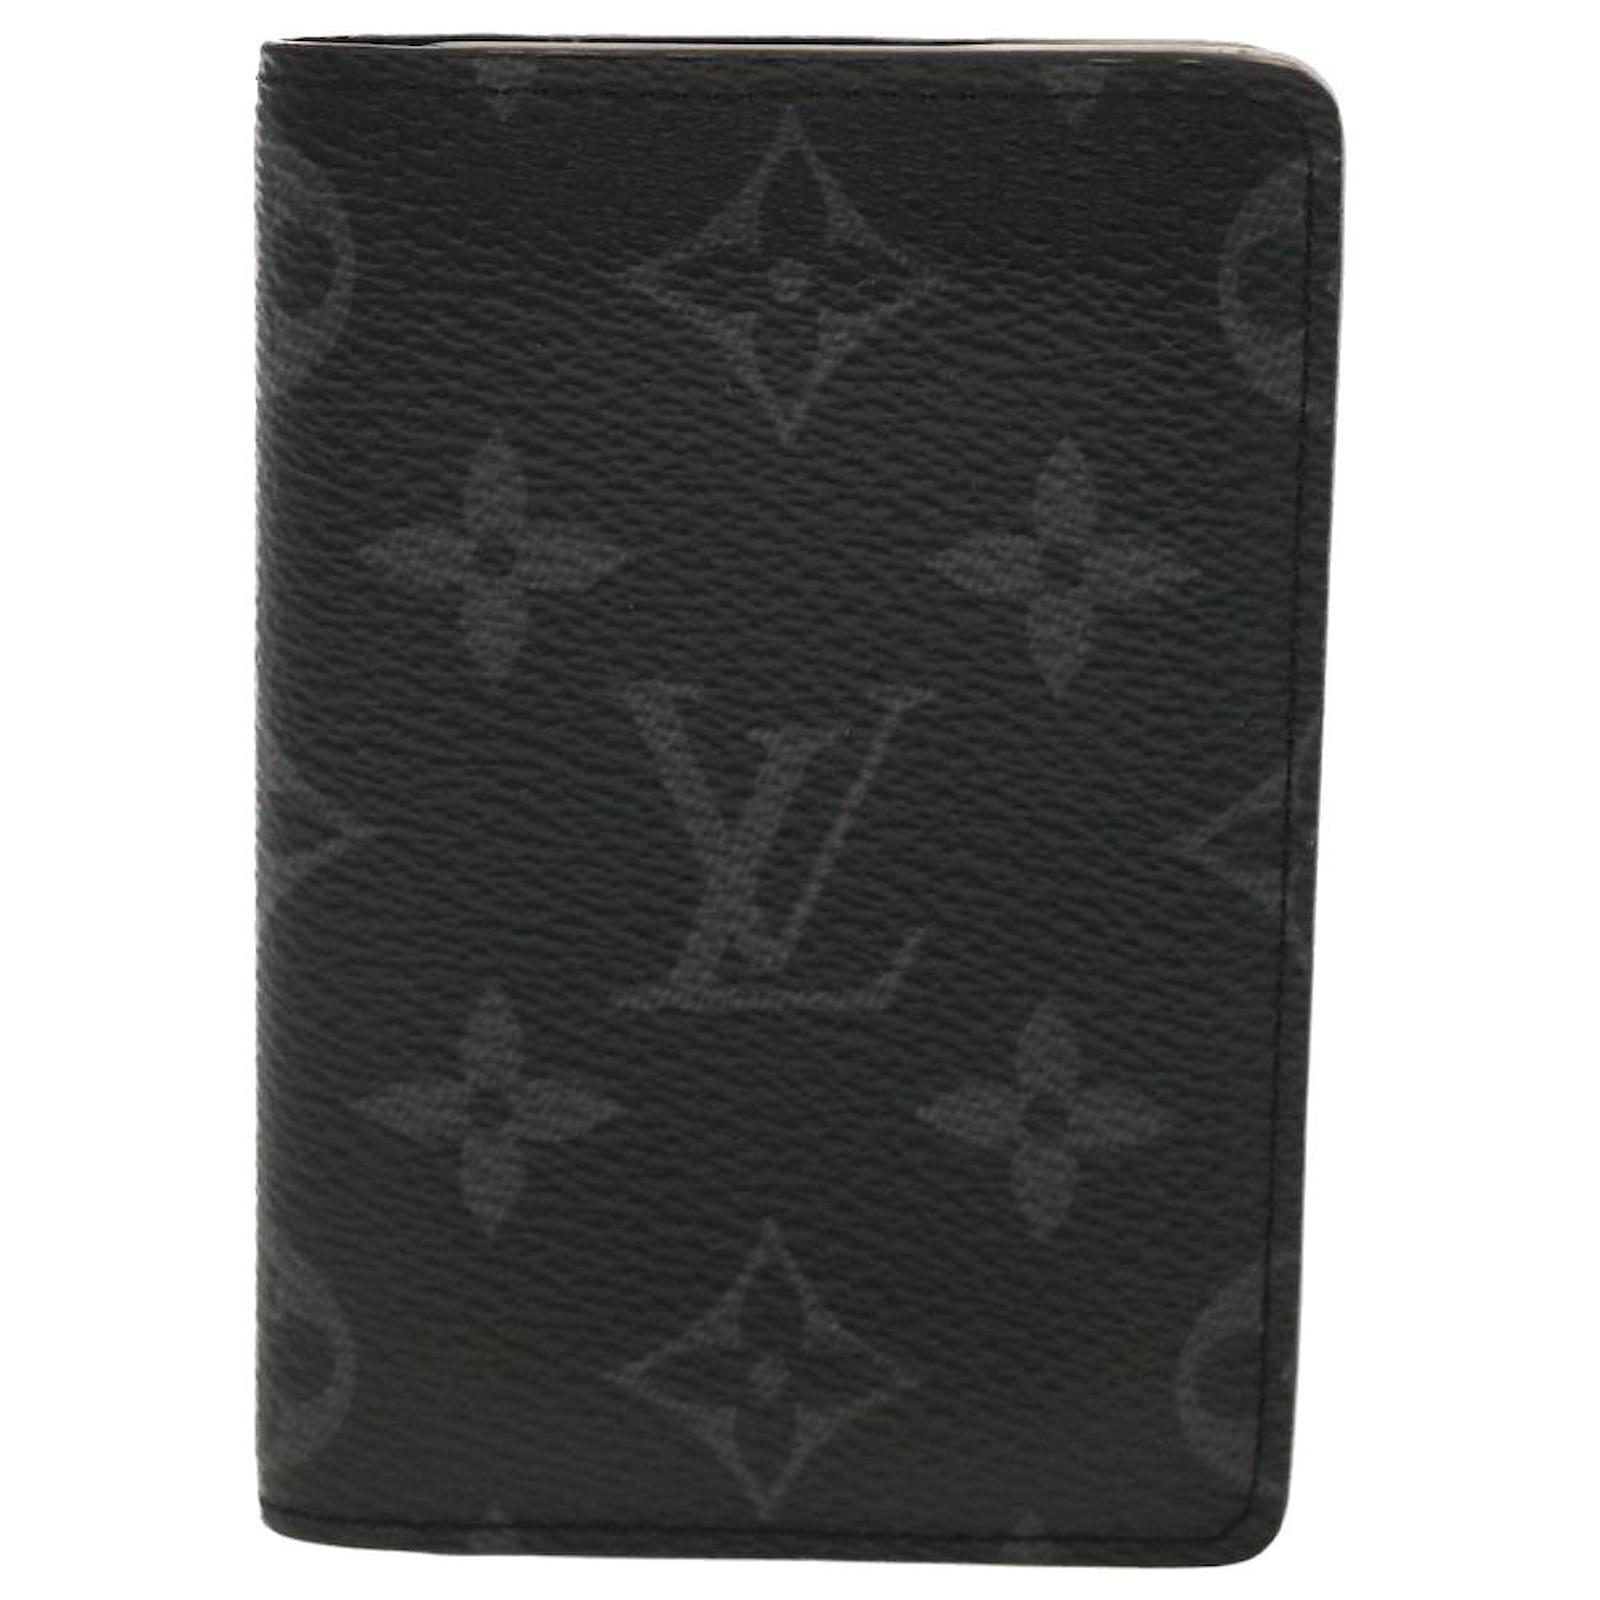 Louis Vuitton M61696 Monogram card organizer leather holder 